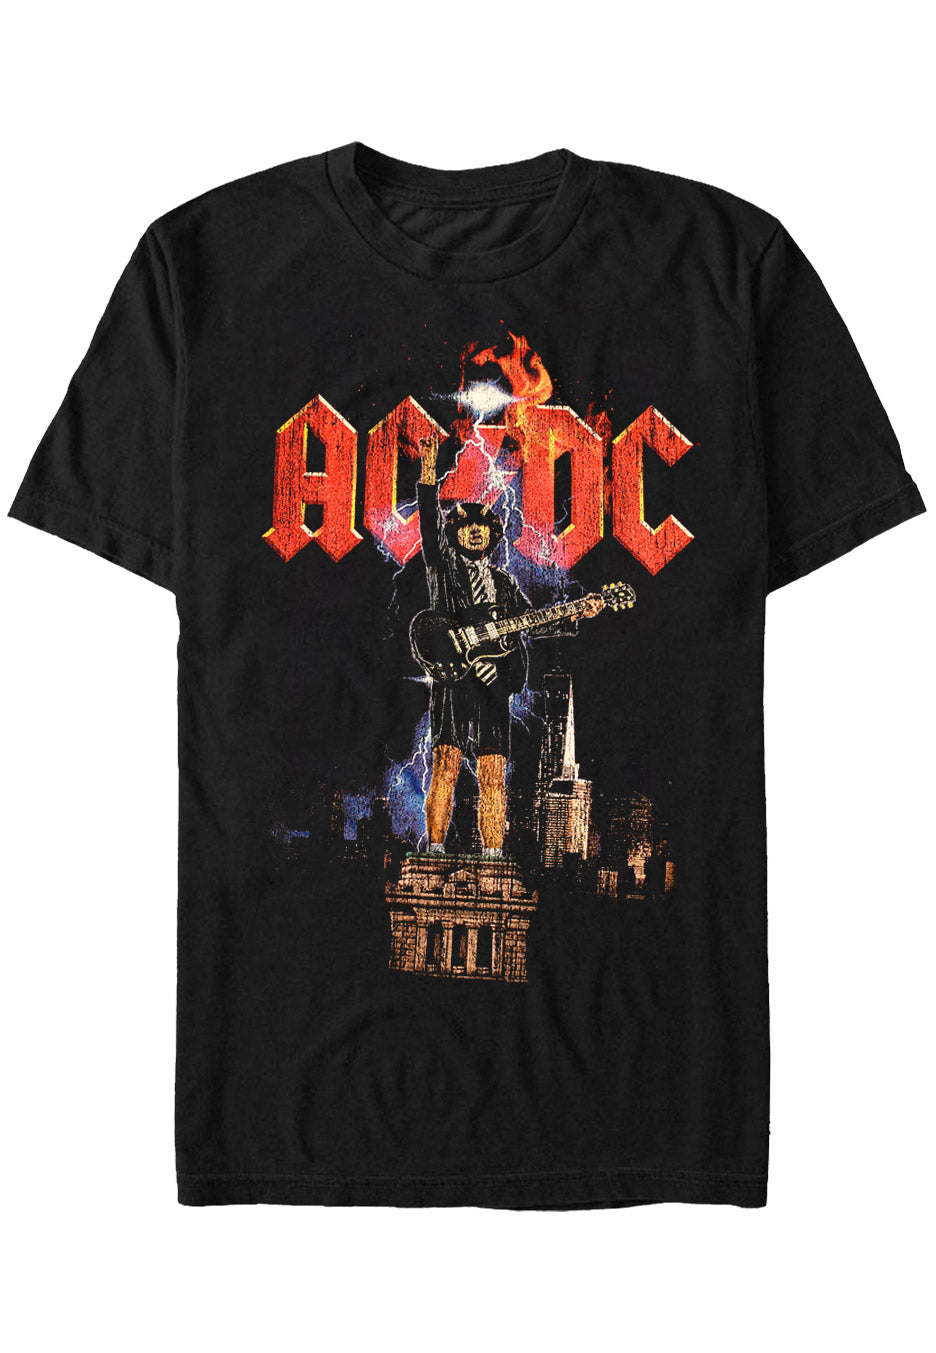 AC/DC - Angus NYC Lightning - T-Shirt